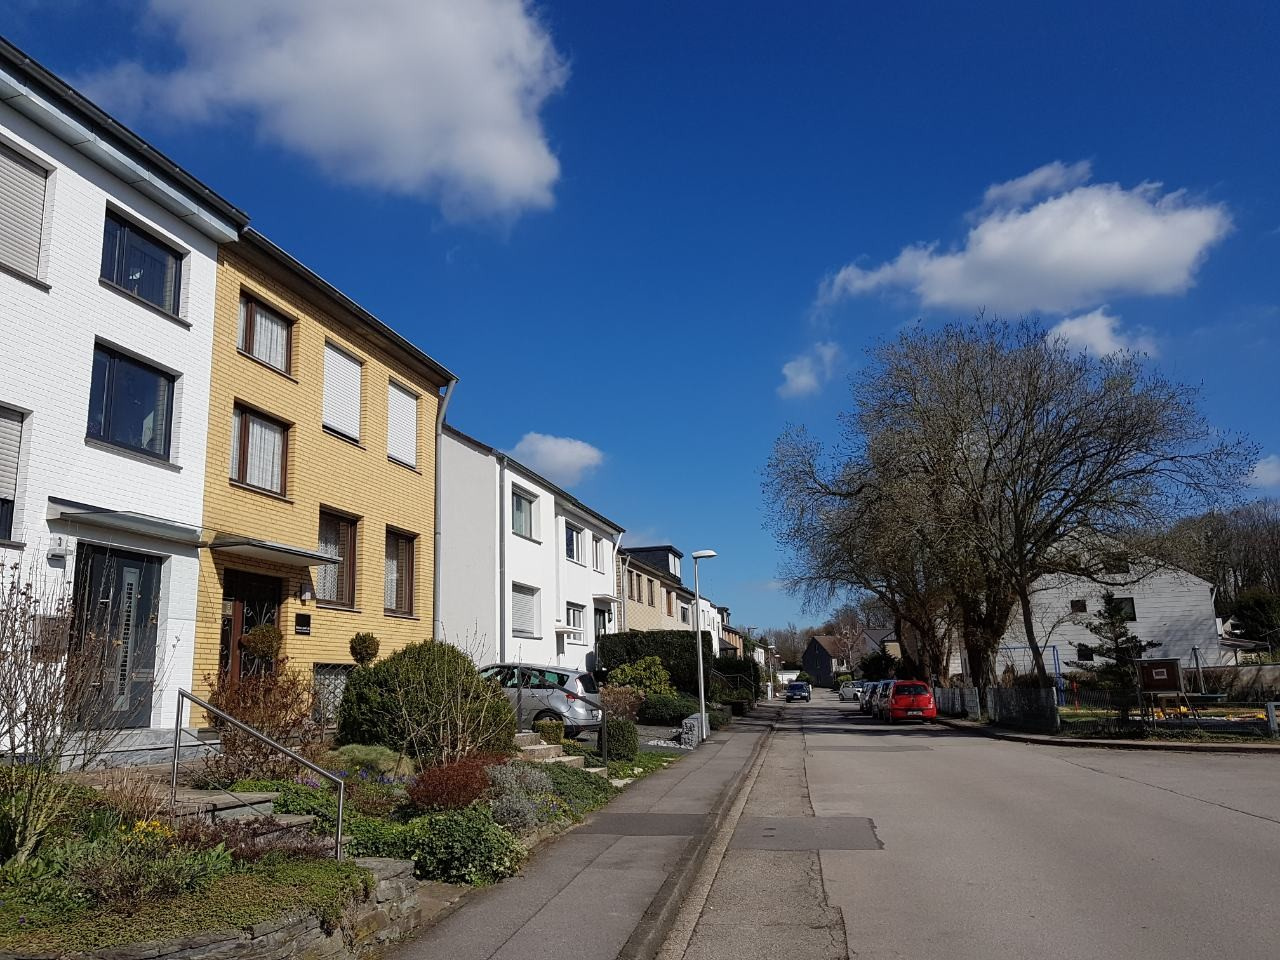 Улица с «доходными» домами в Германии